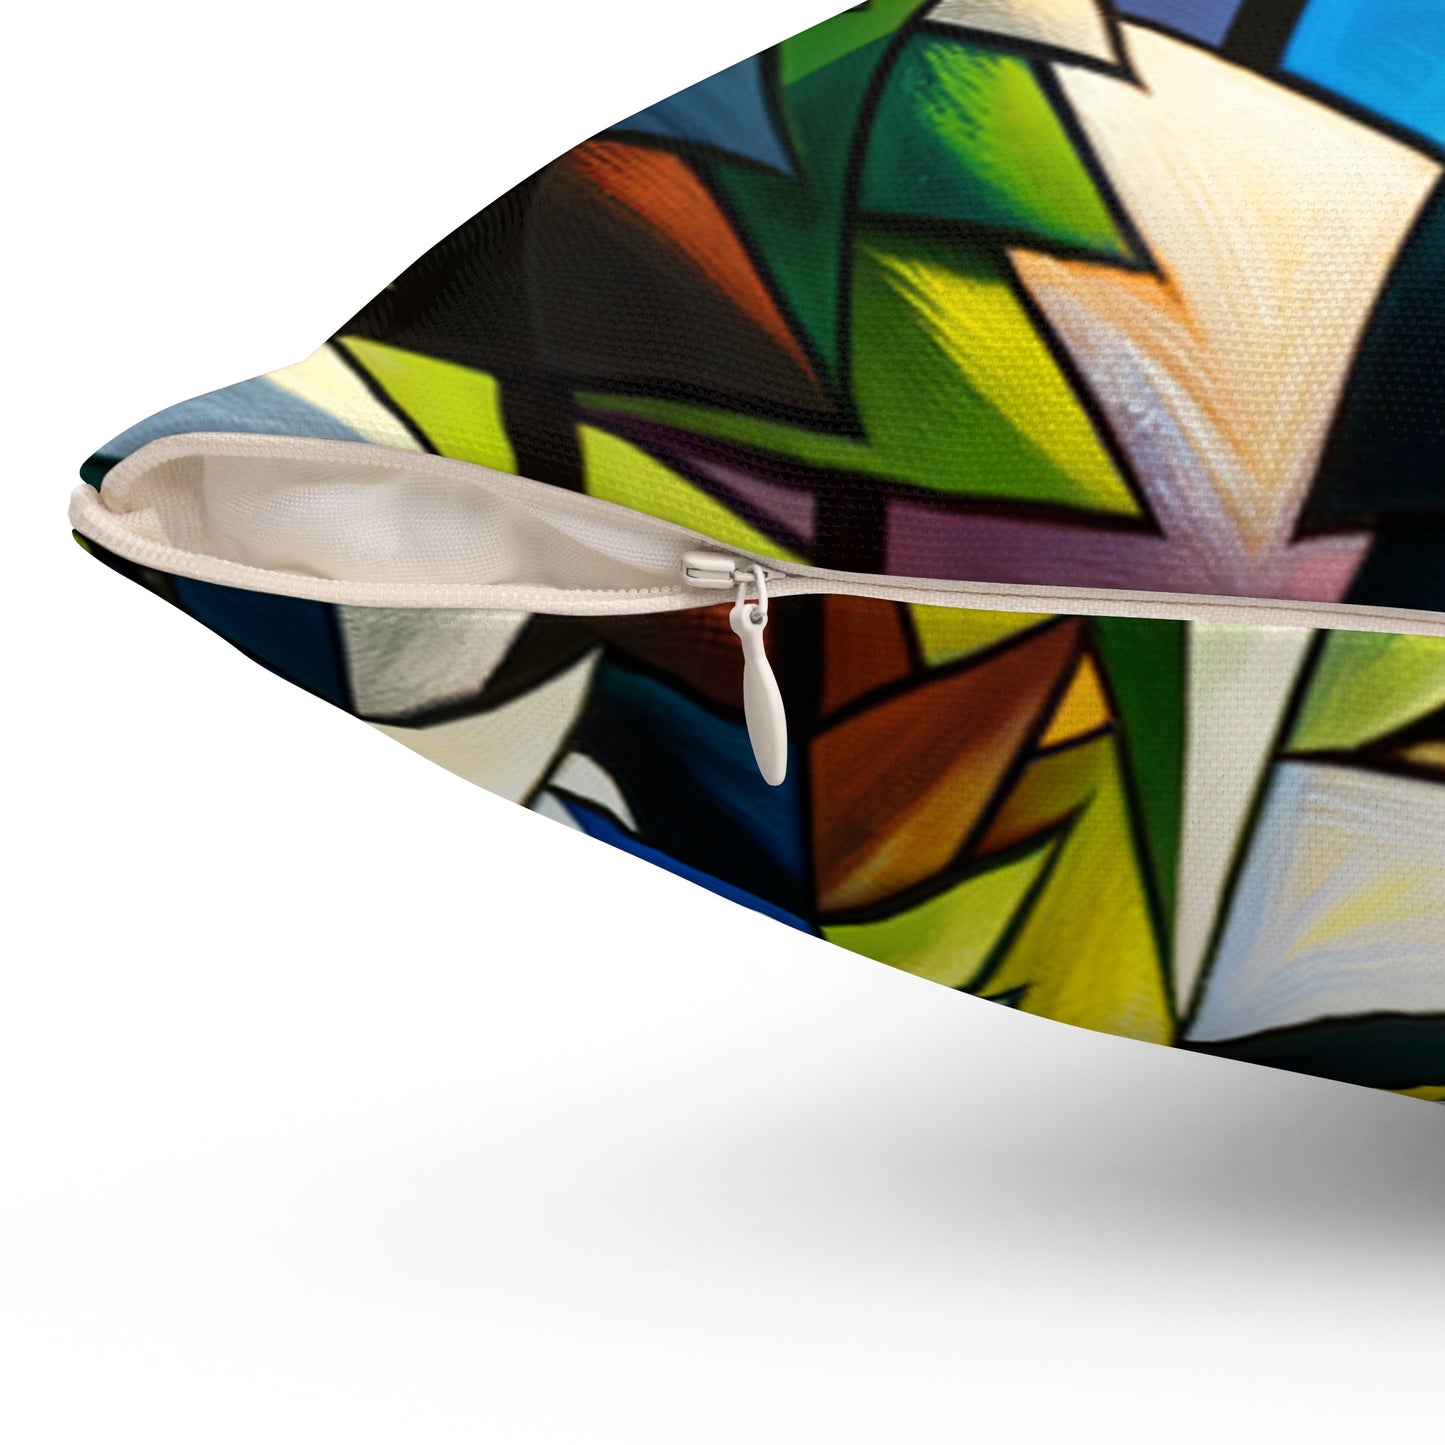 « Naturalisme cubique » - L’oreiller carré en polyester filé Alien Style cubisme